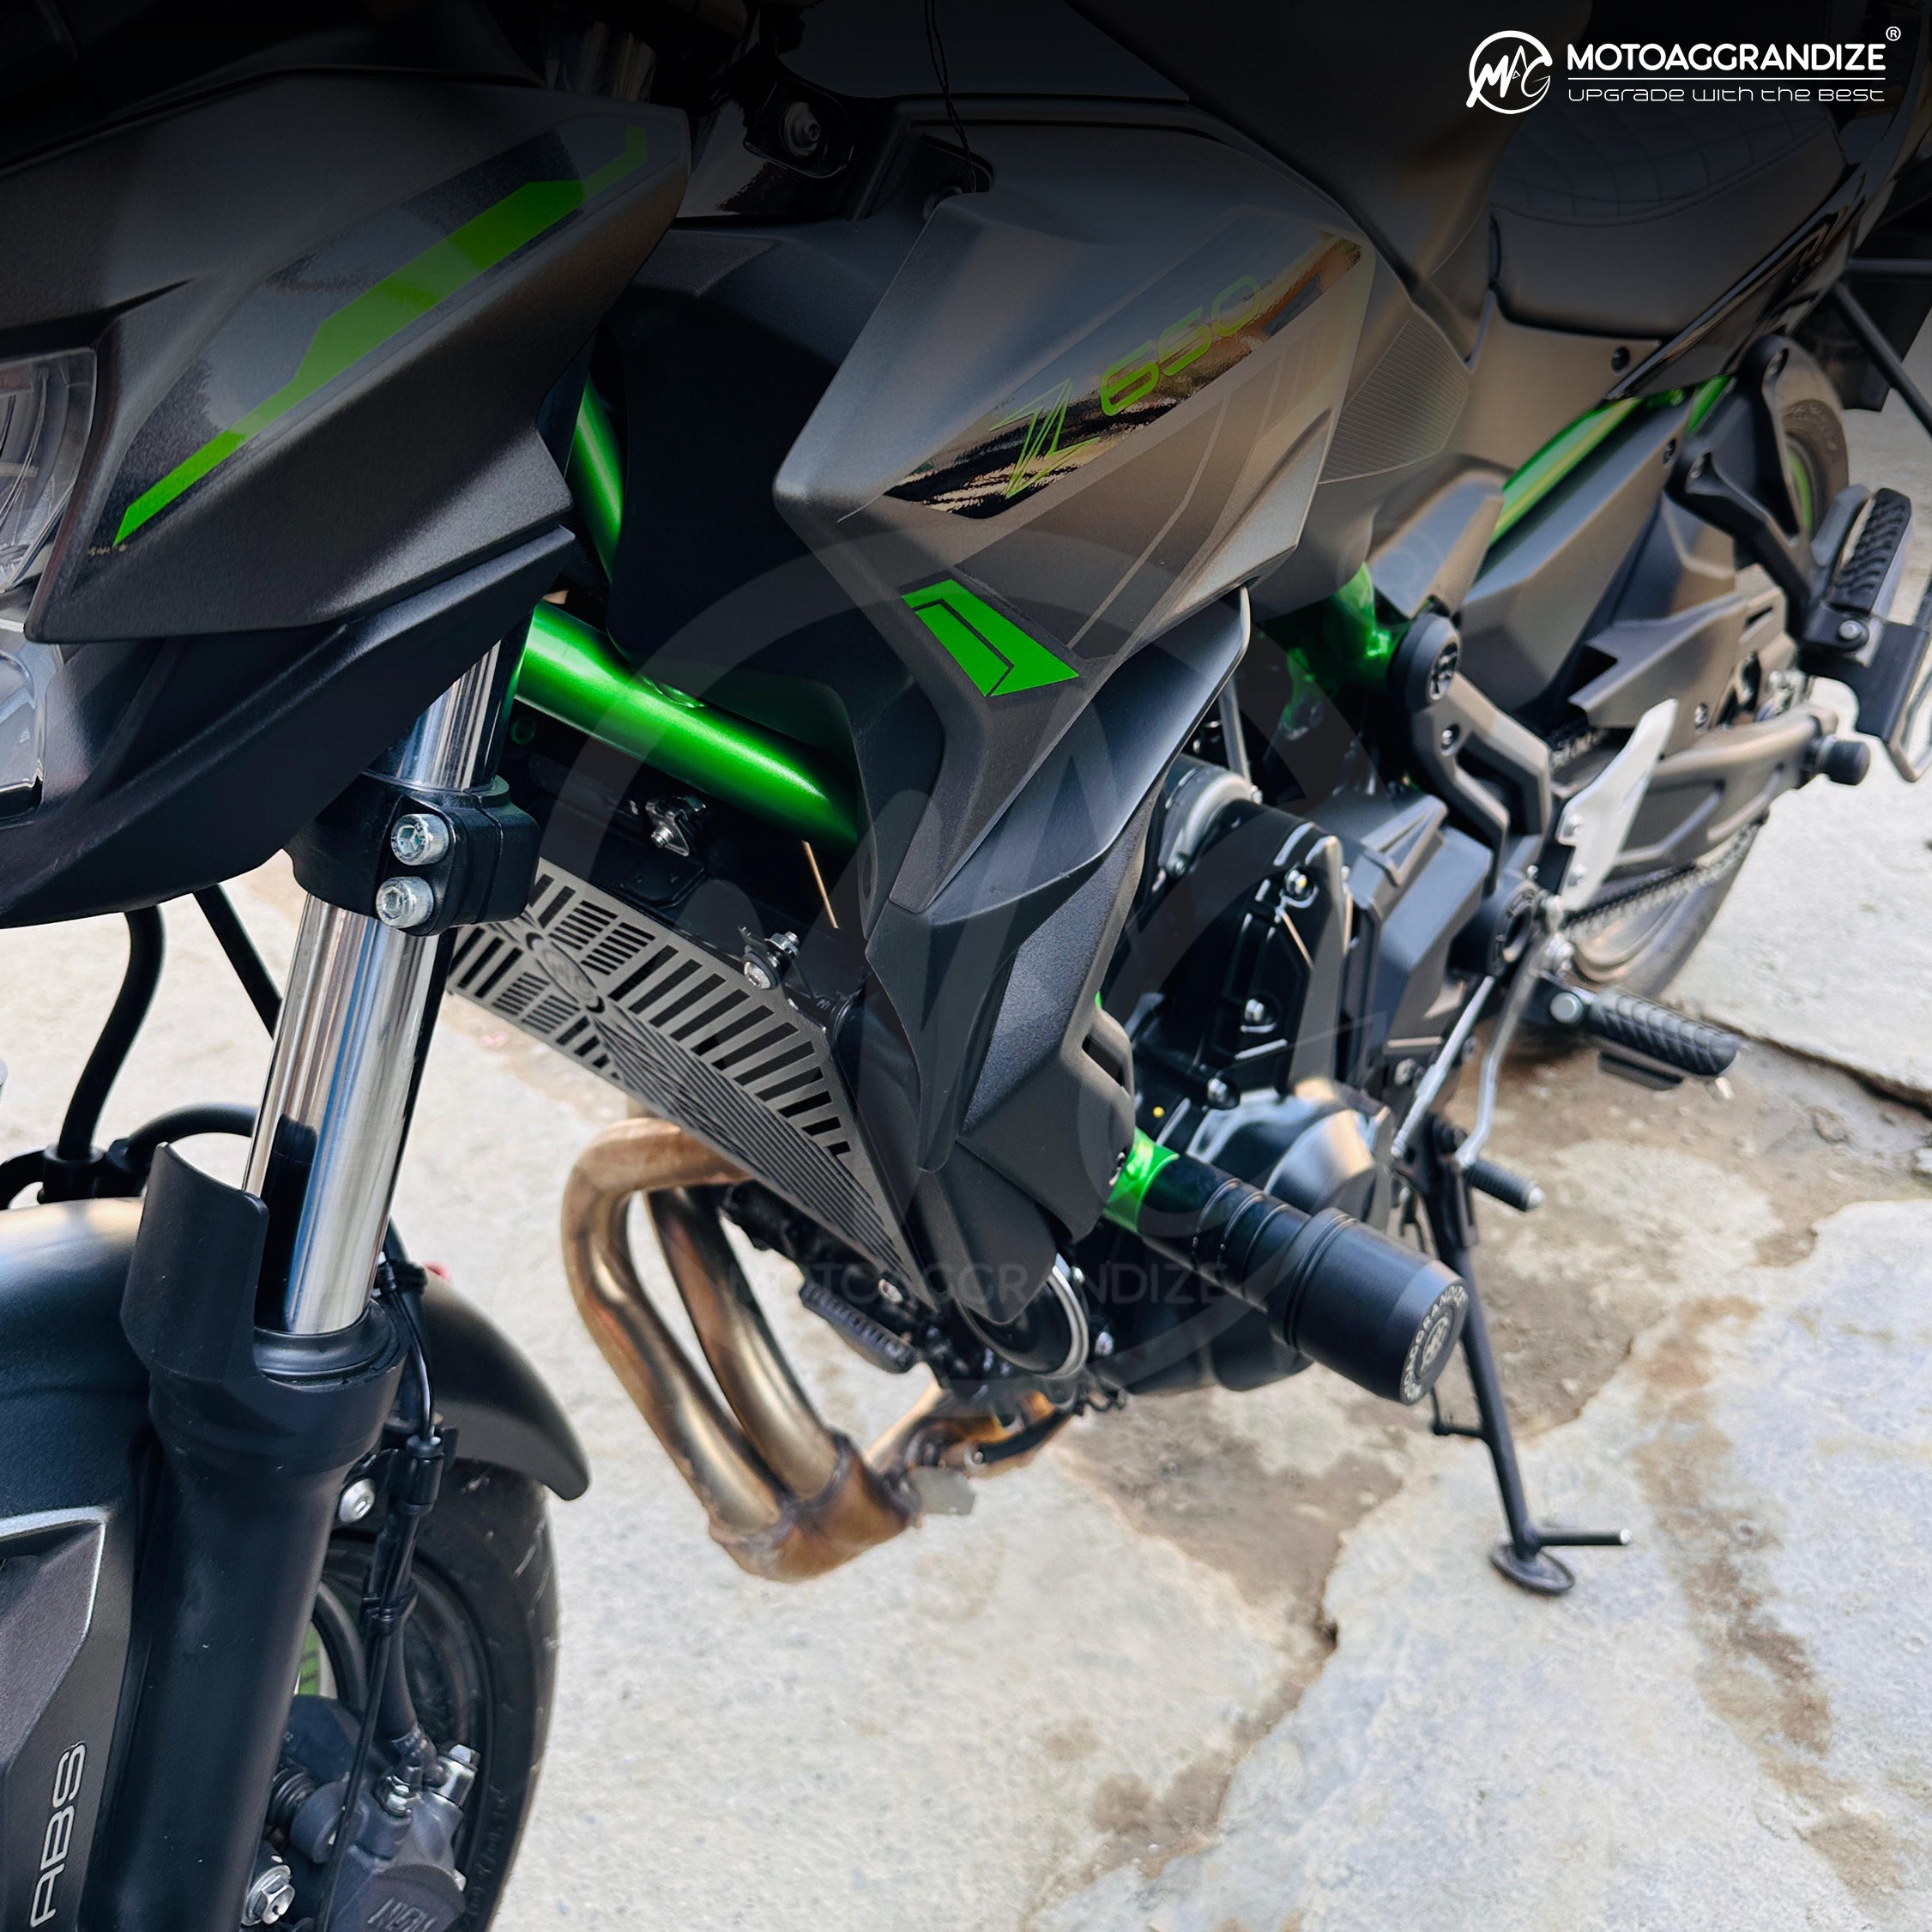 MOTOAGGRANDIZE Frame Sliders / Crash Protectors for Kawasaki Ninja 650 / Z 650